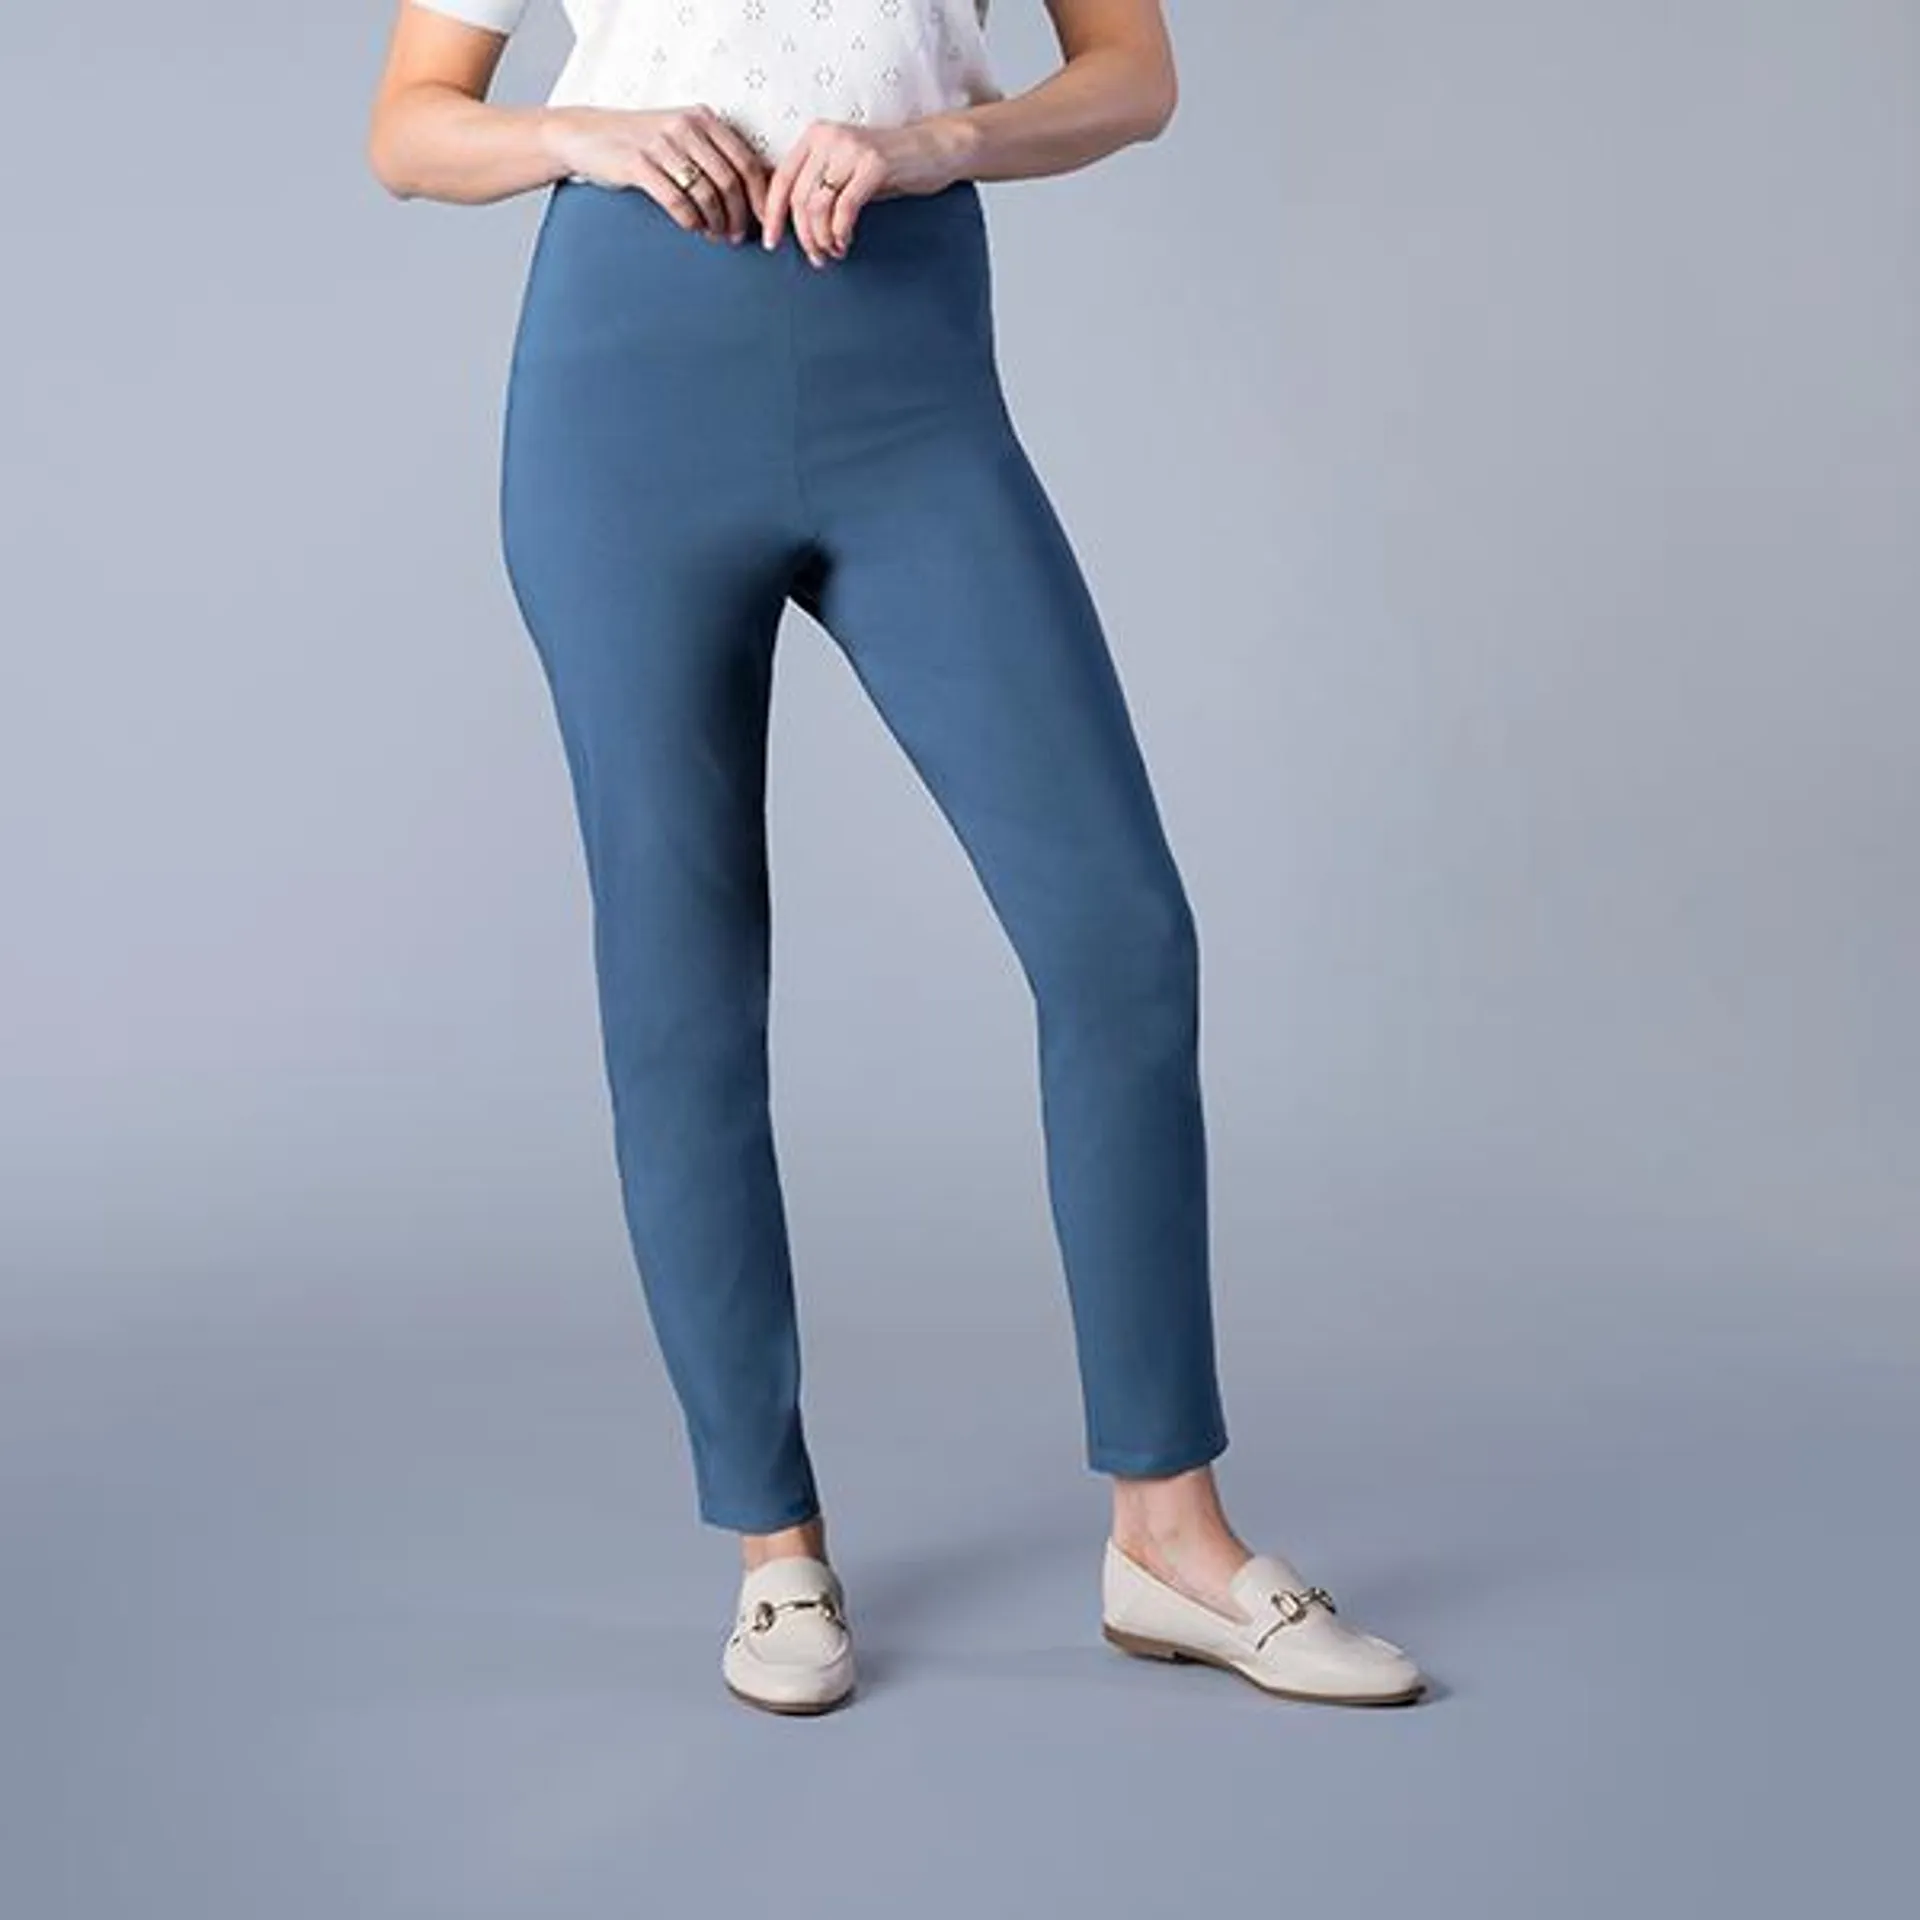 Maison De Nimes Stretch Trousers - 28 inch